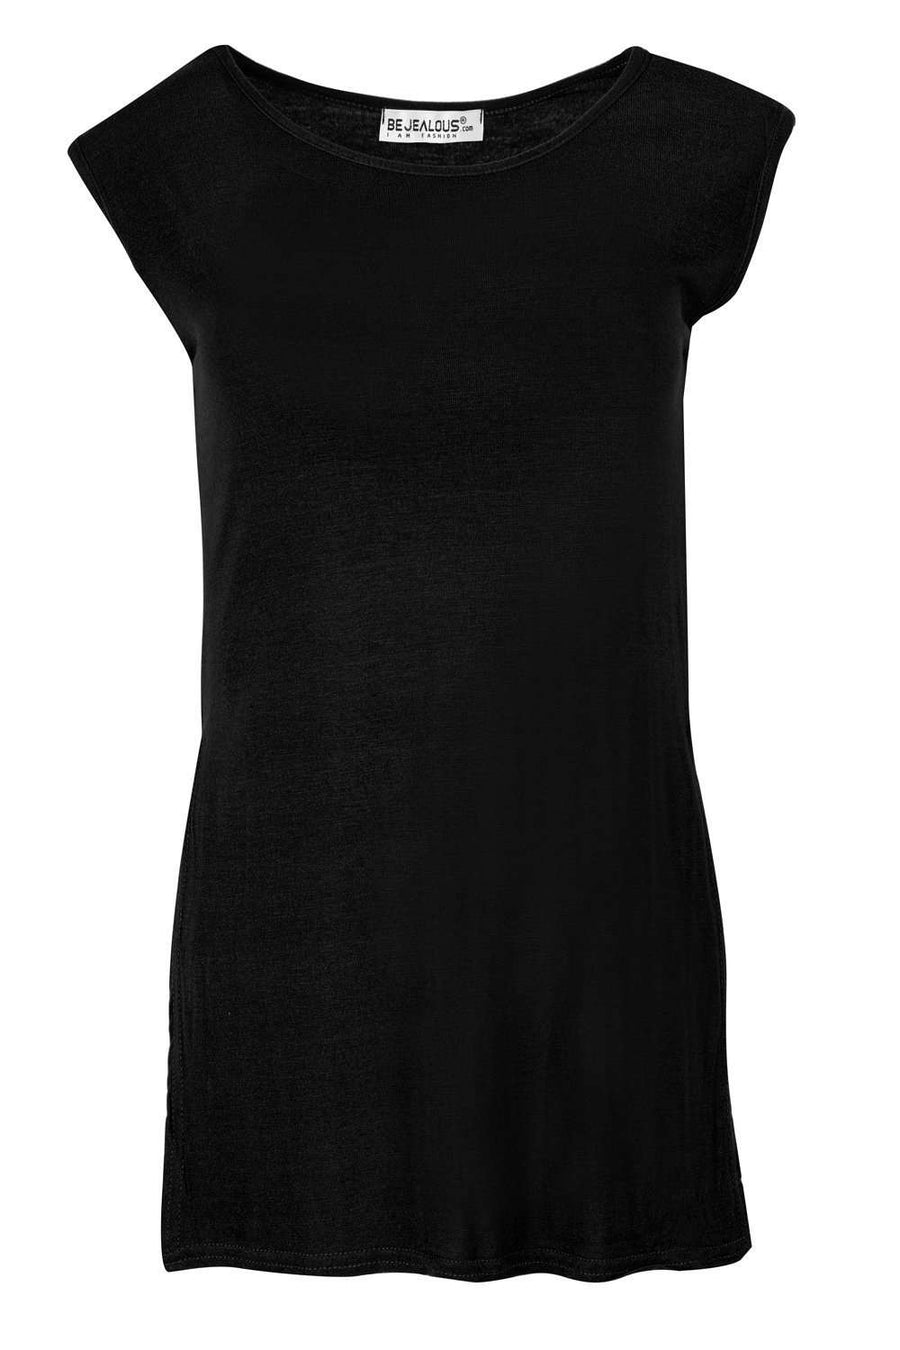 Millie Side Split Oversized Basic Vest Top - bejealous-com